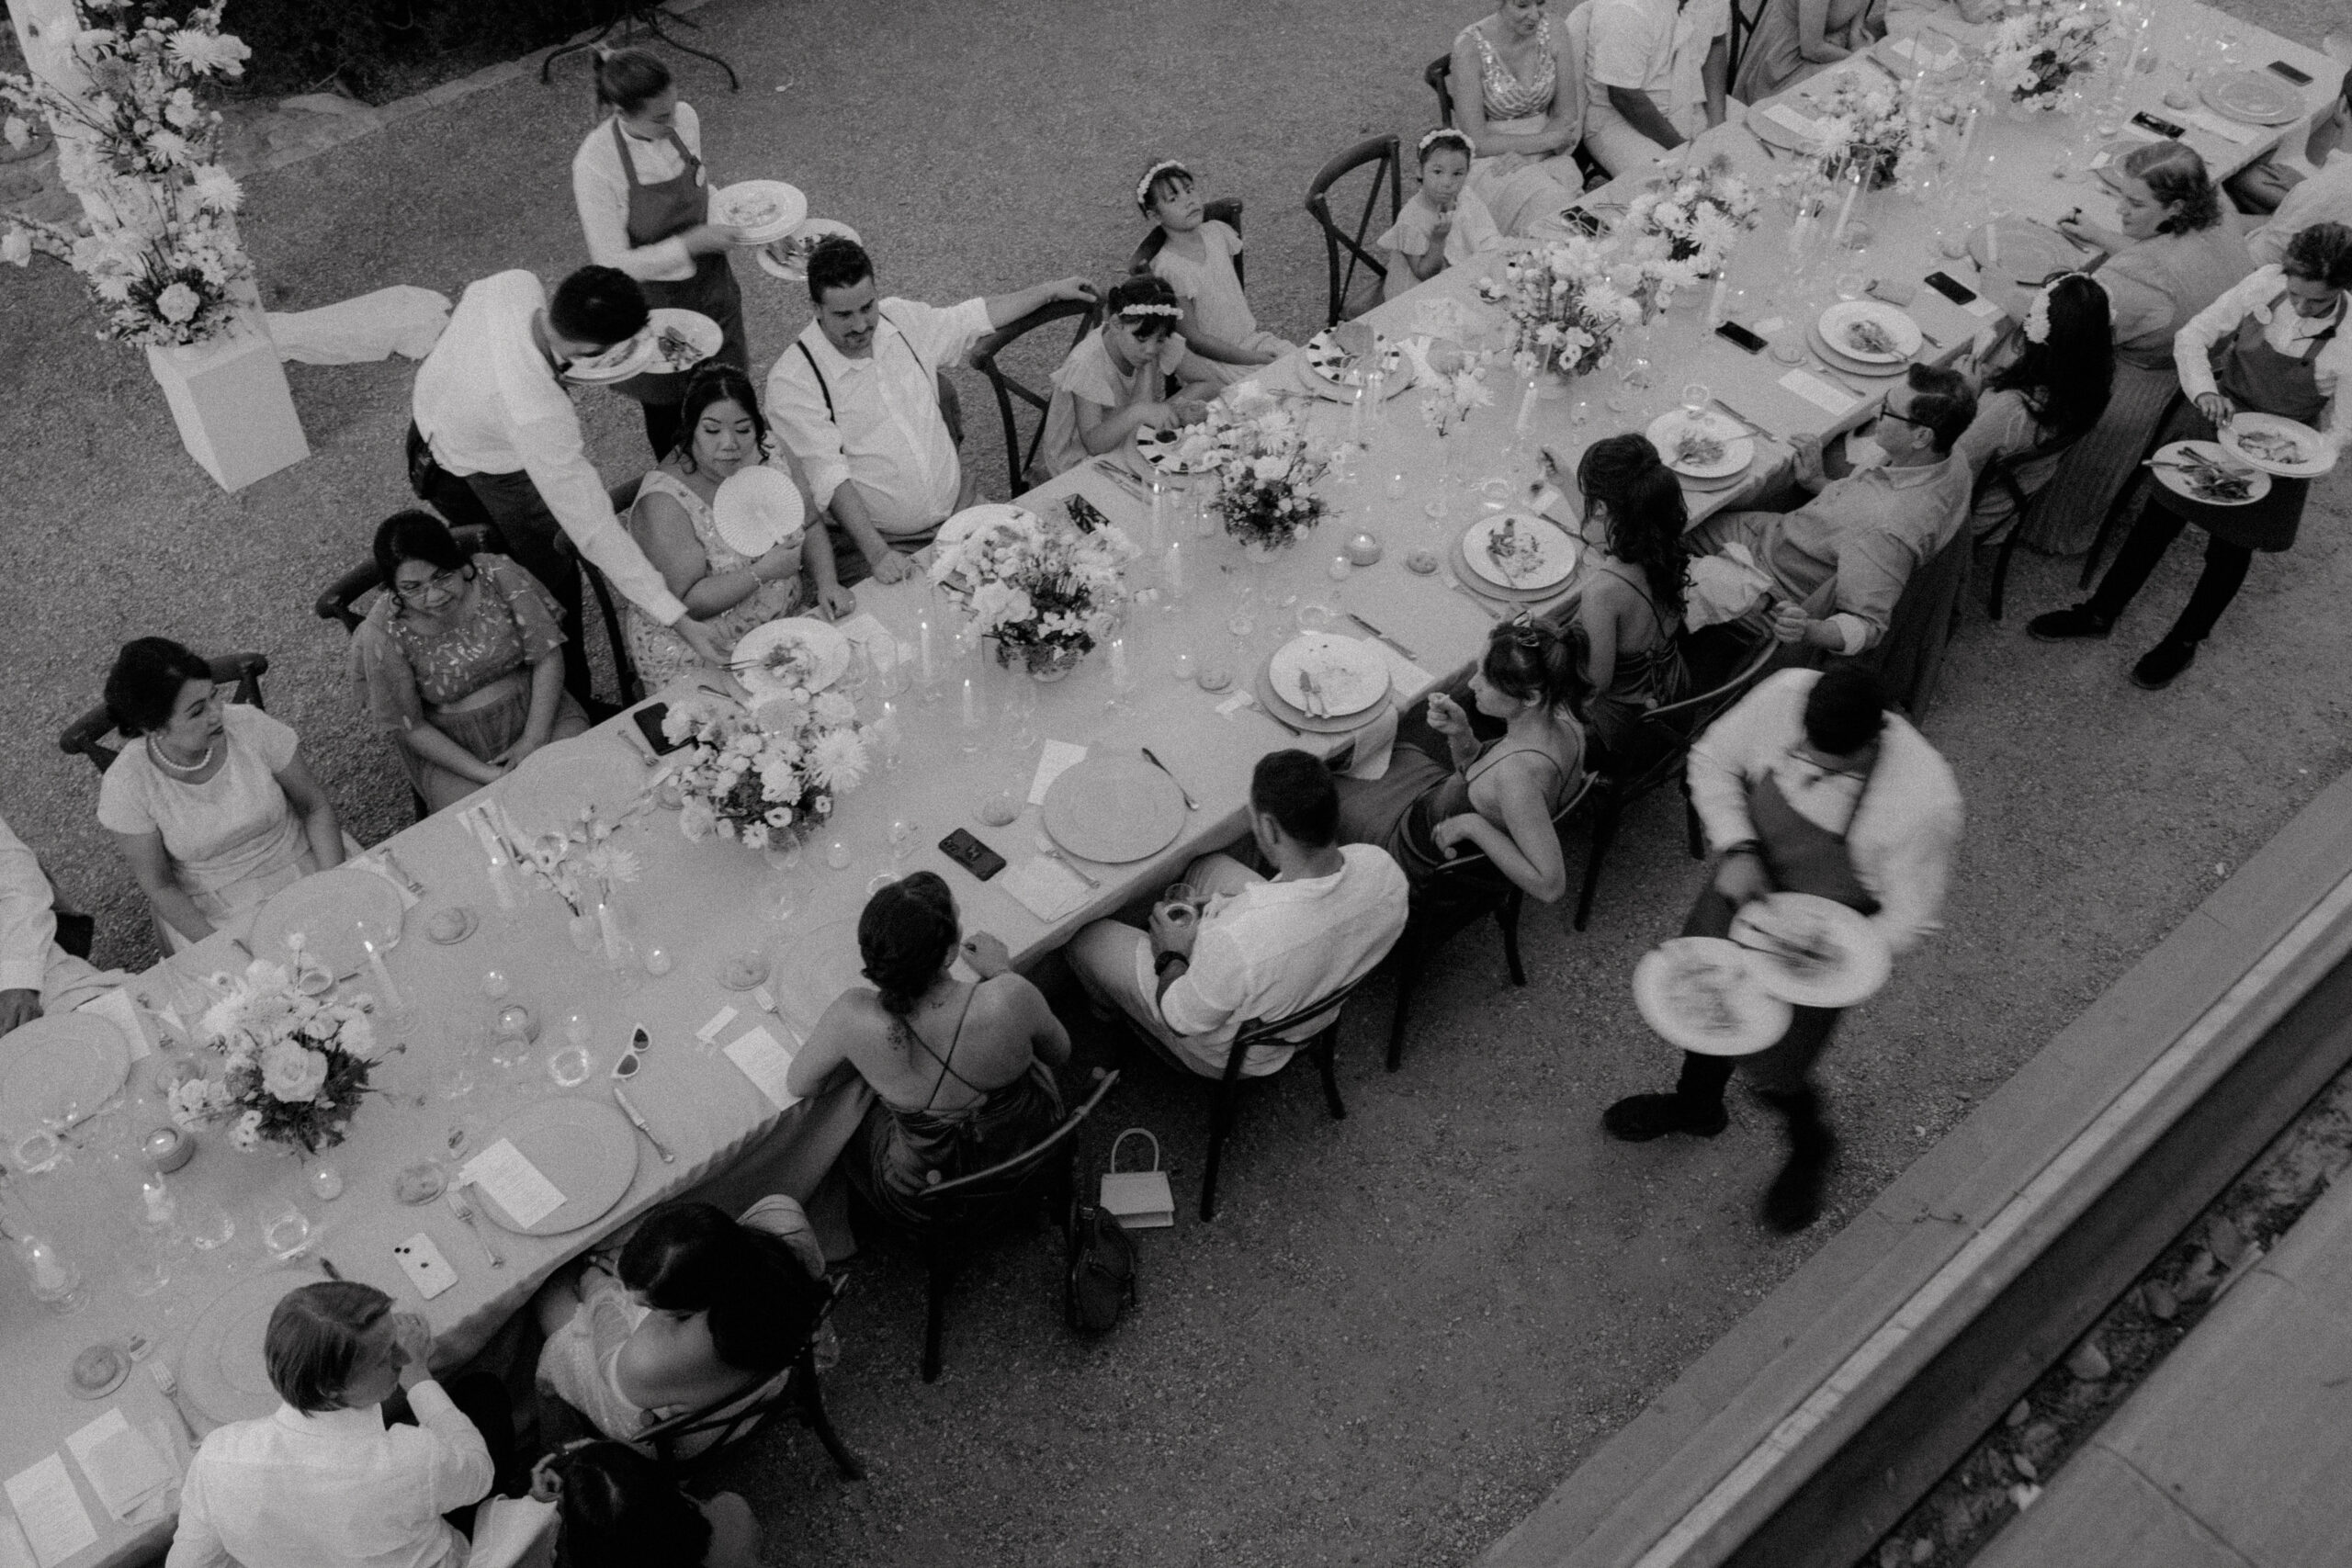 Vogelperspektive auf ein elegantes Hochzeitsdinner im Freien in Düsseldorf, mit Gästen in festlicher Kleidung, die um eine lange Tafel mit weißer Tischdecke und Blumendekoration sitzen, eingefangen in monochromer Fotografie für ein klassisches Flair.